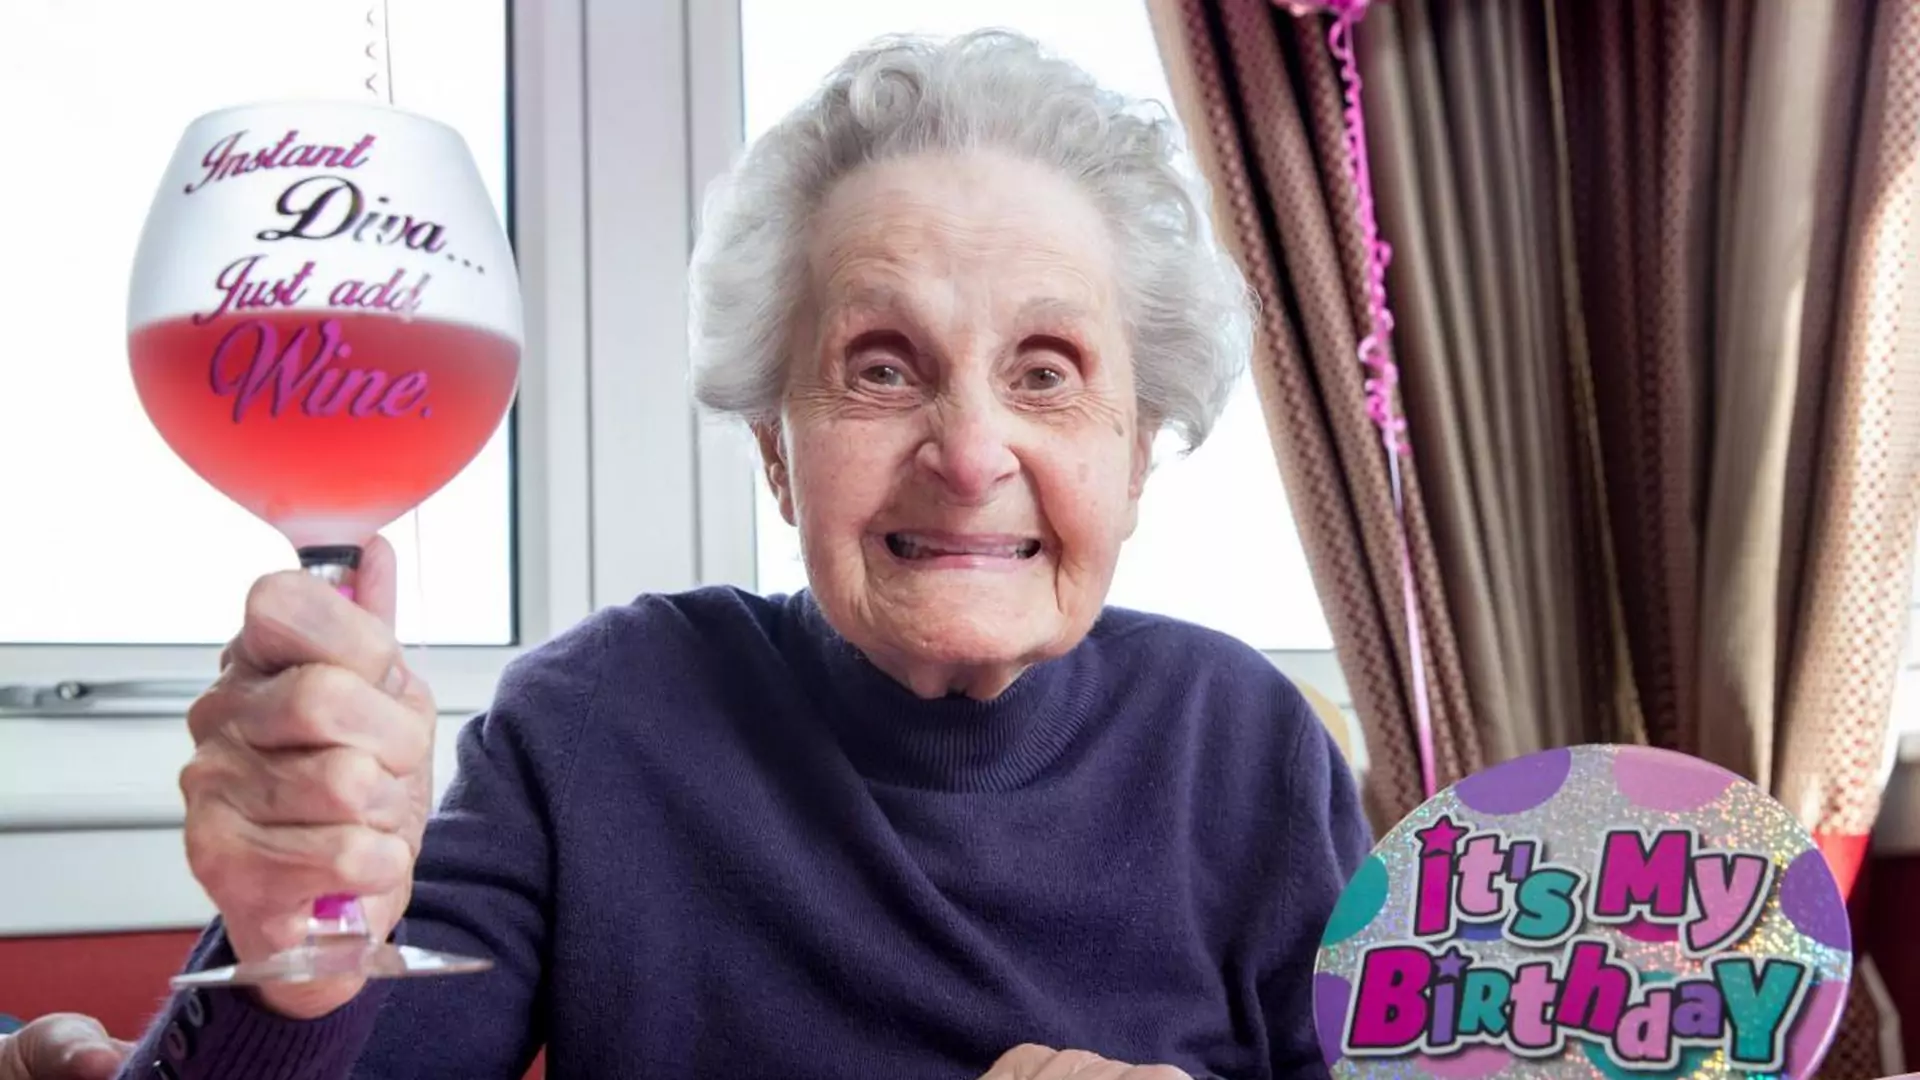 Jej dieta to papierosy i wino, a skończyła właśnie 102 lata. Wszyscy głowią się, jak to możliwe